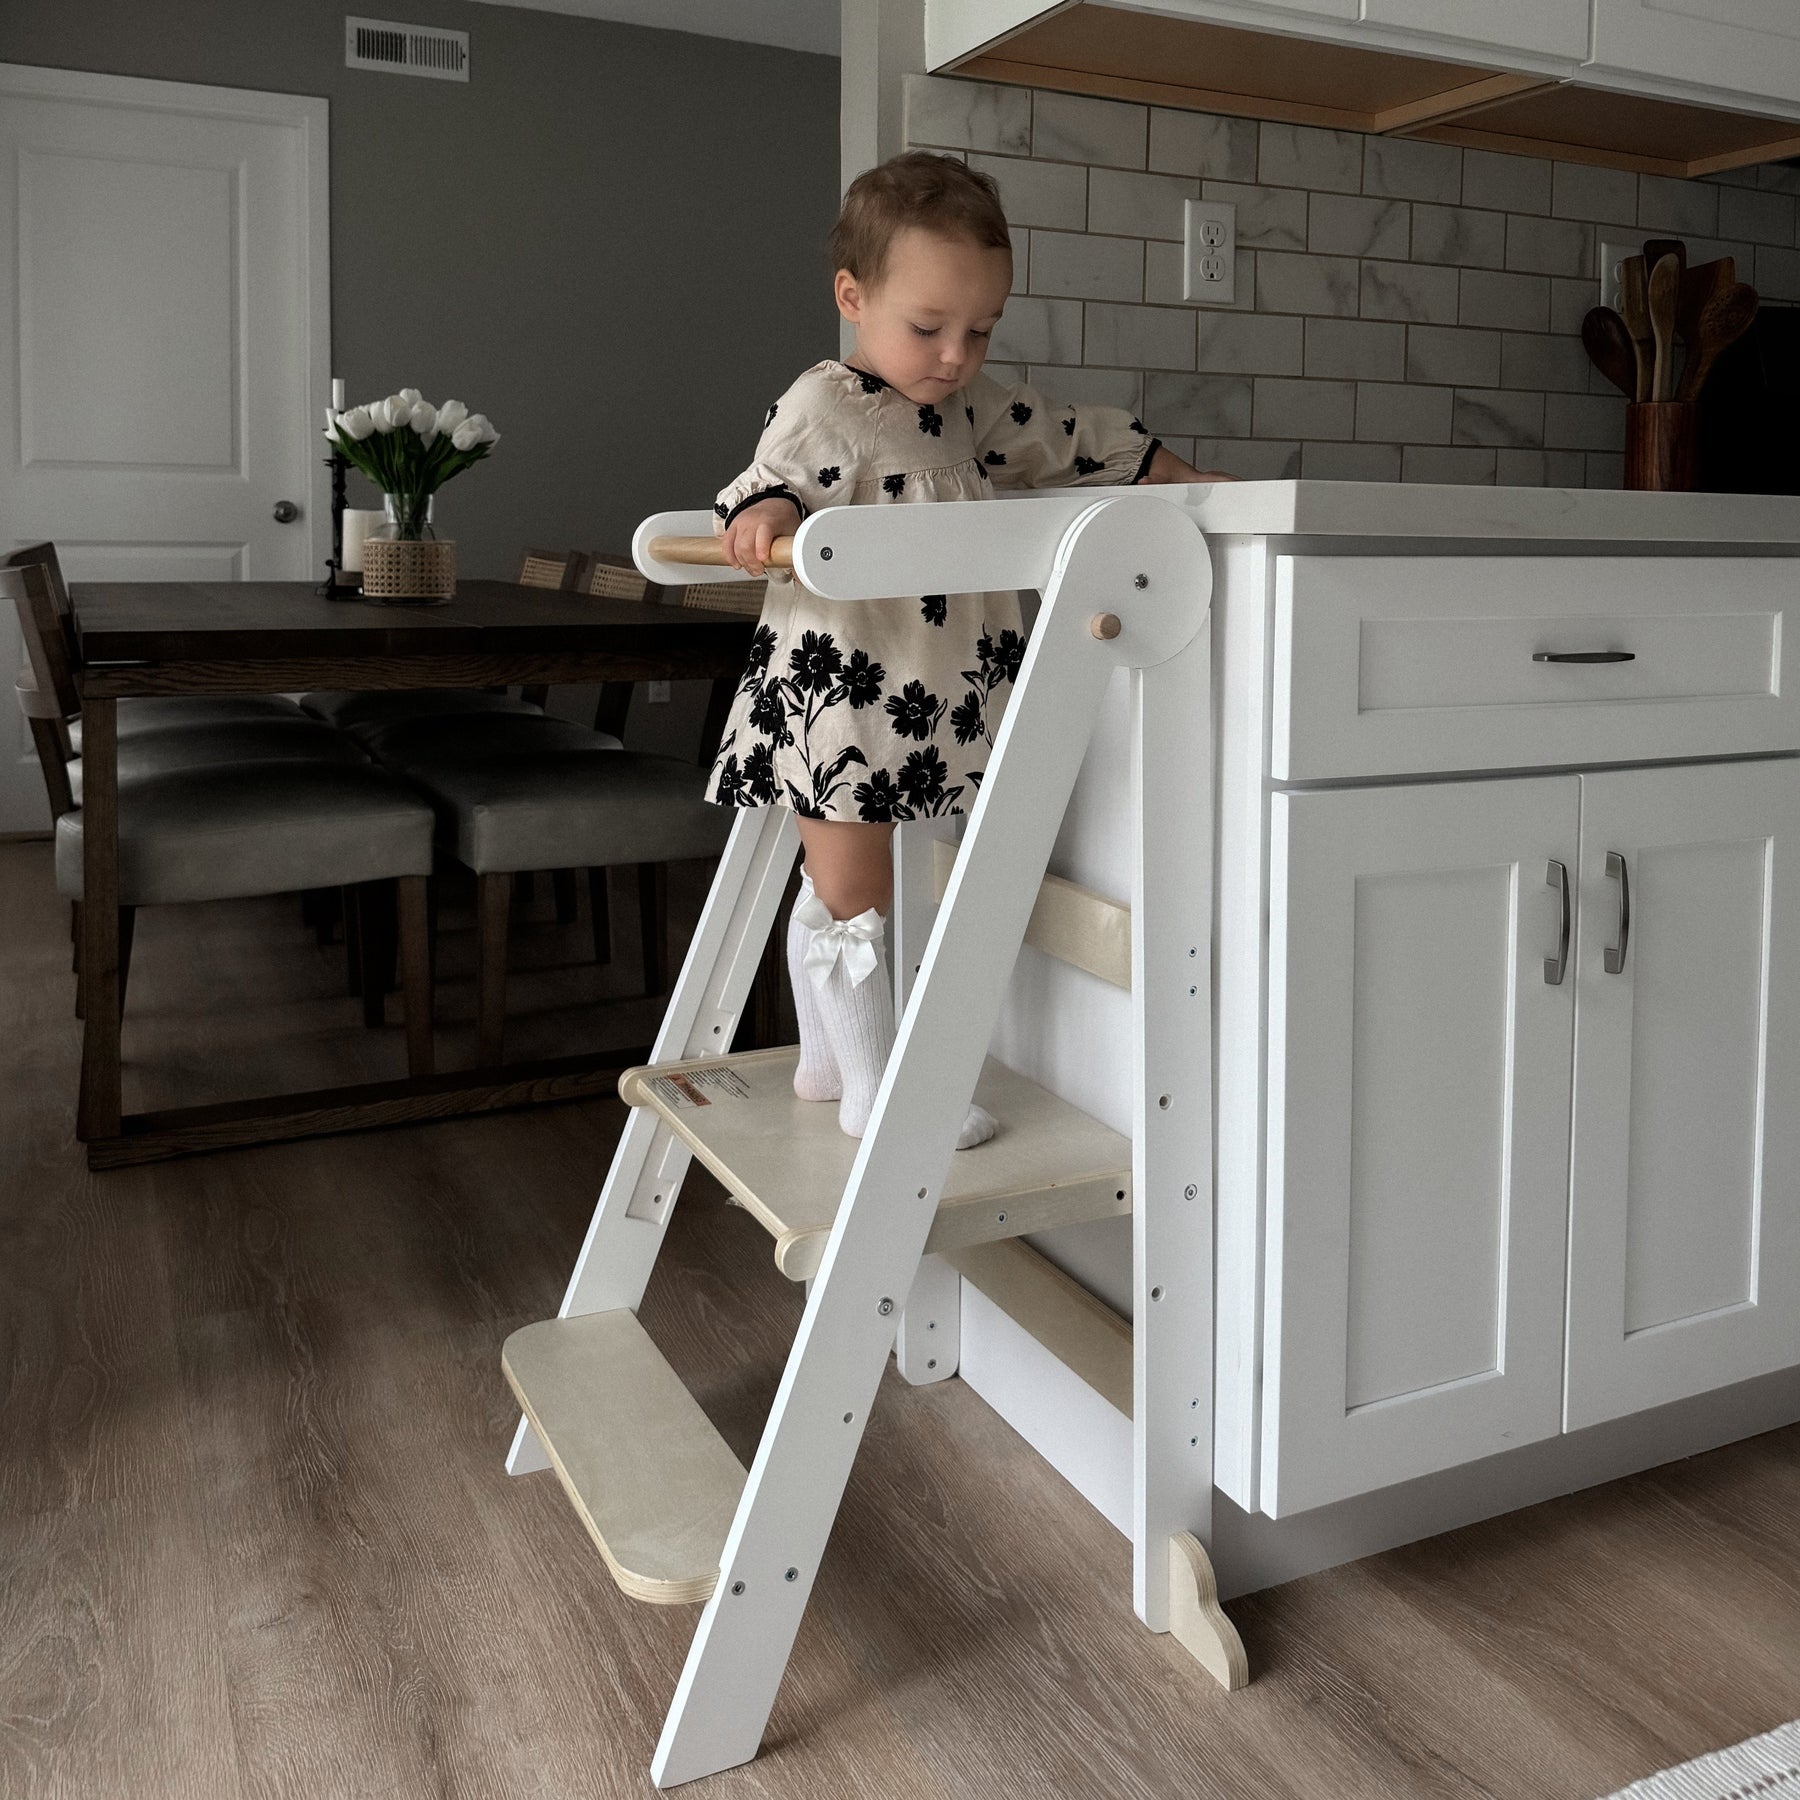 HARPPA Nordi | Foldable Toddler Tower, Kitchen Stool Helper